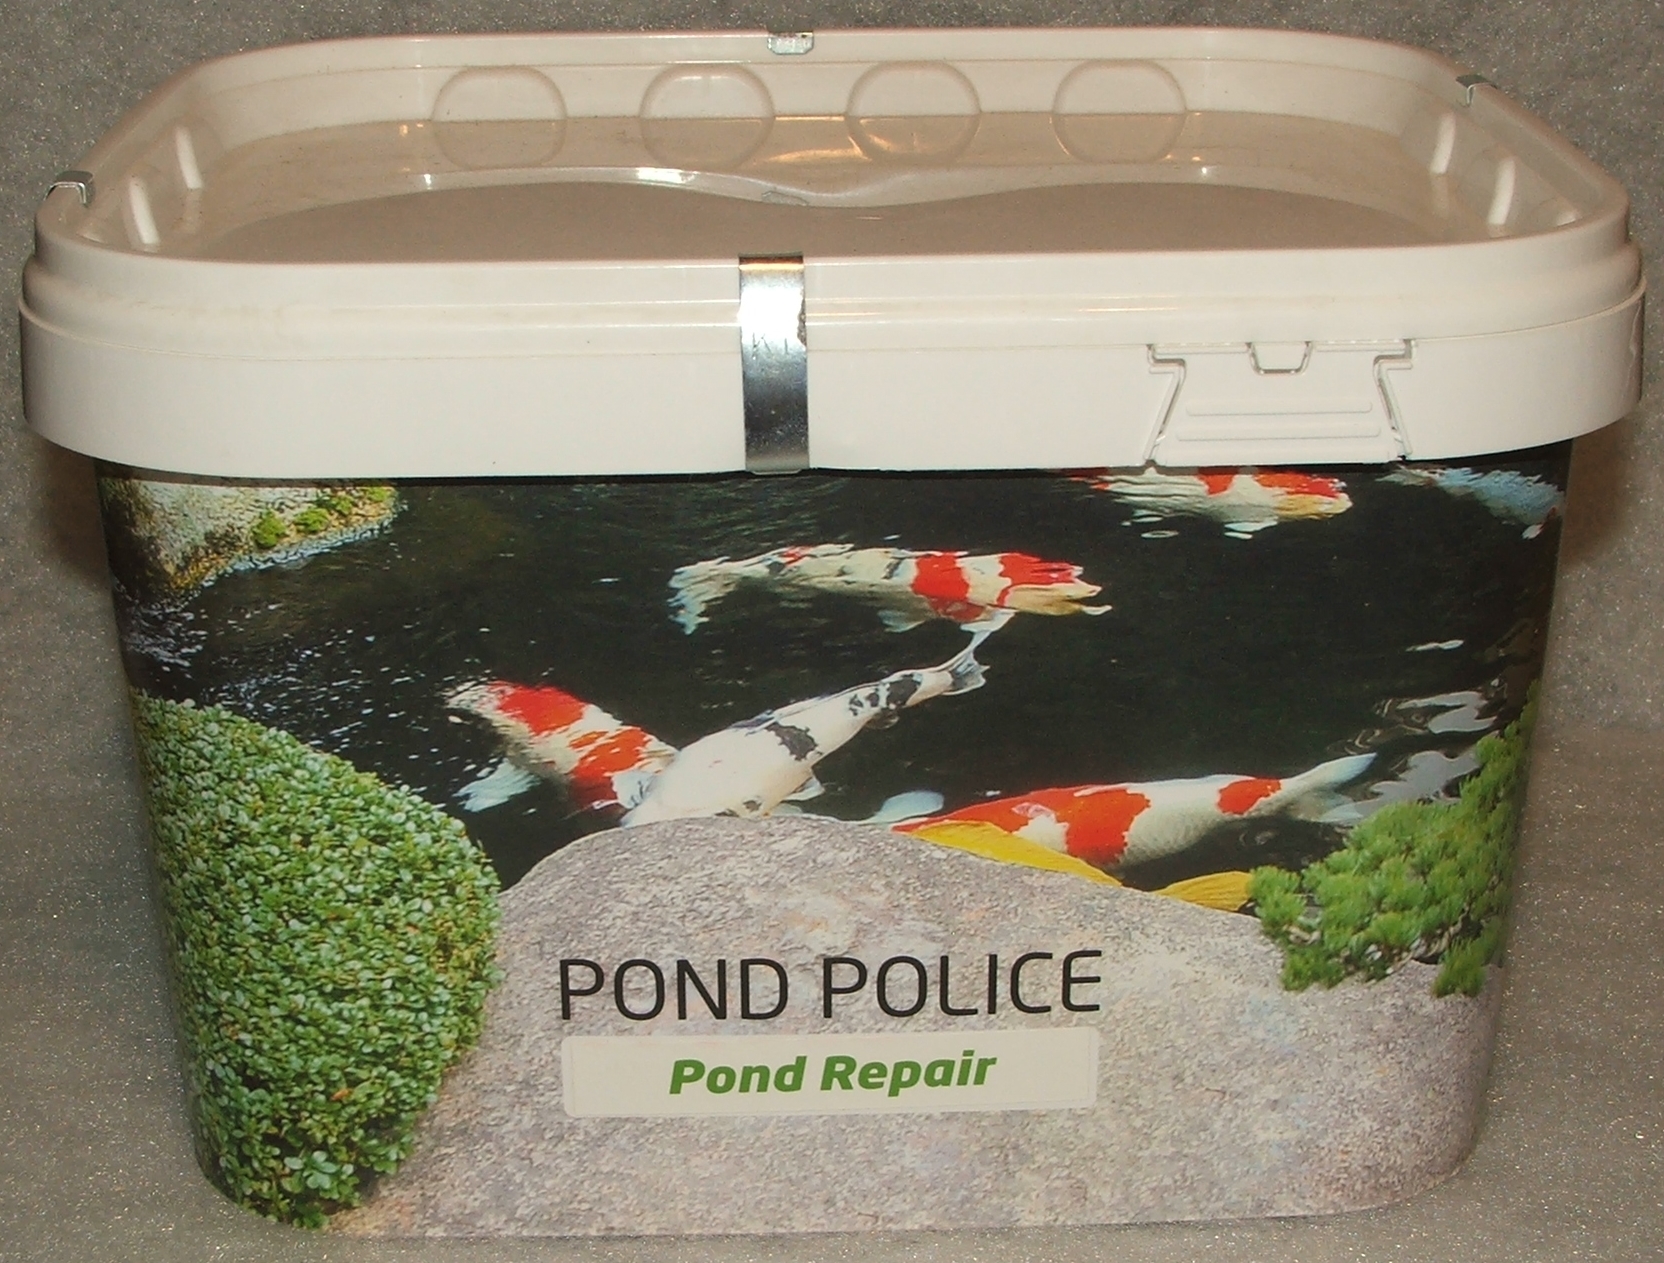 Pond Repair 20 kg